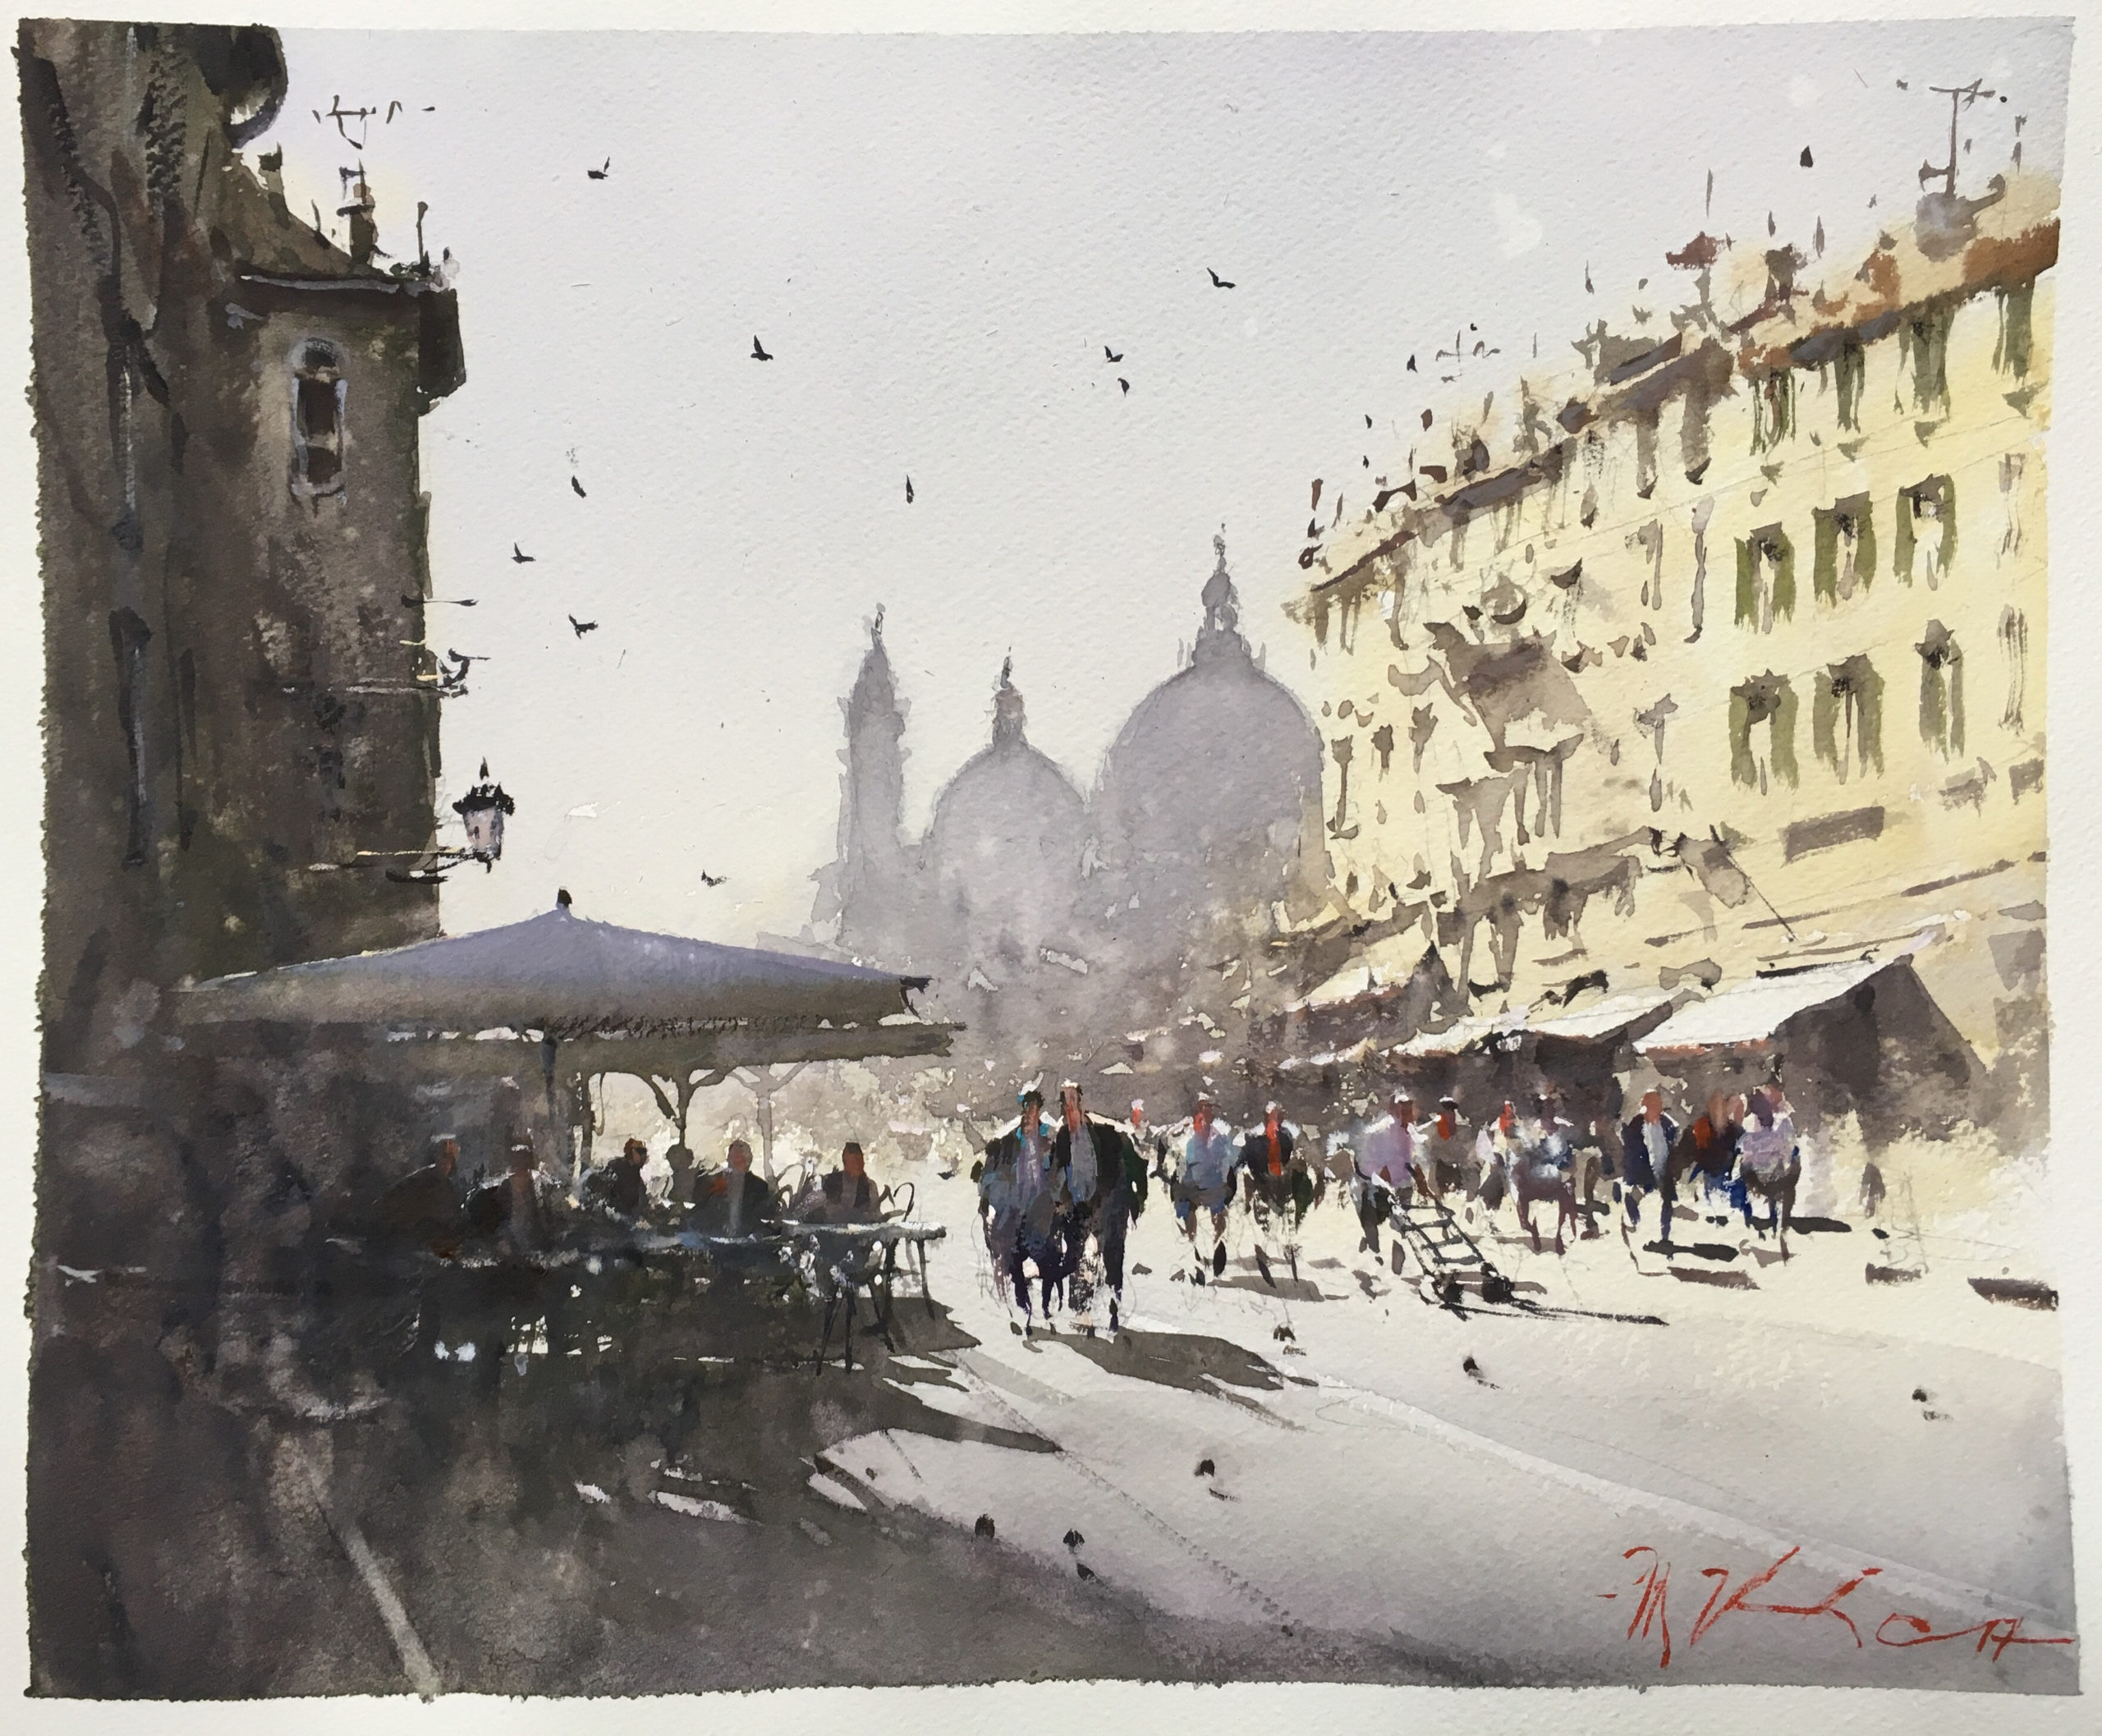 Joseph Zbukvic, "Via Garibaldi, Venezia," 2017, watercolor, 9 x 13 3/8 in., private collection, plein air